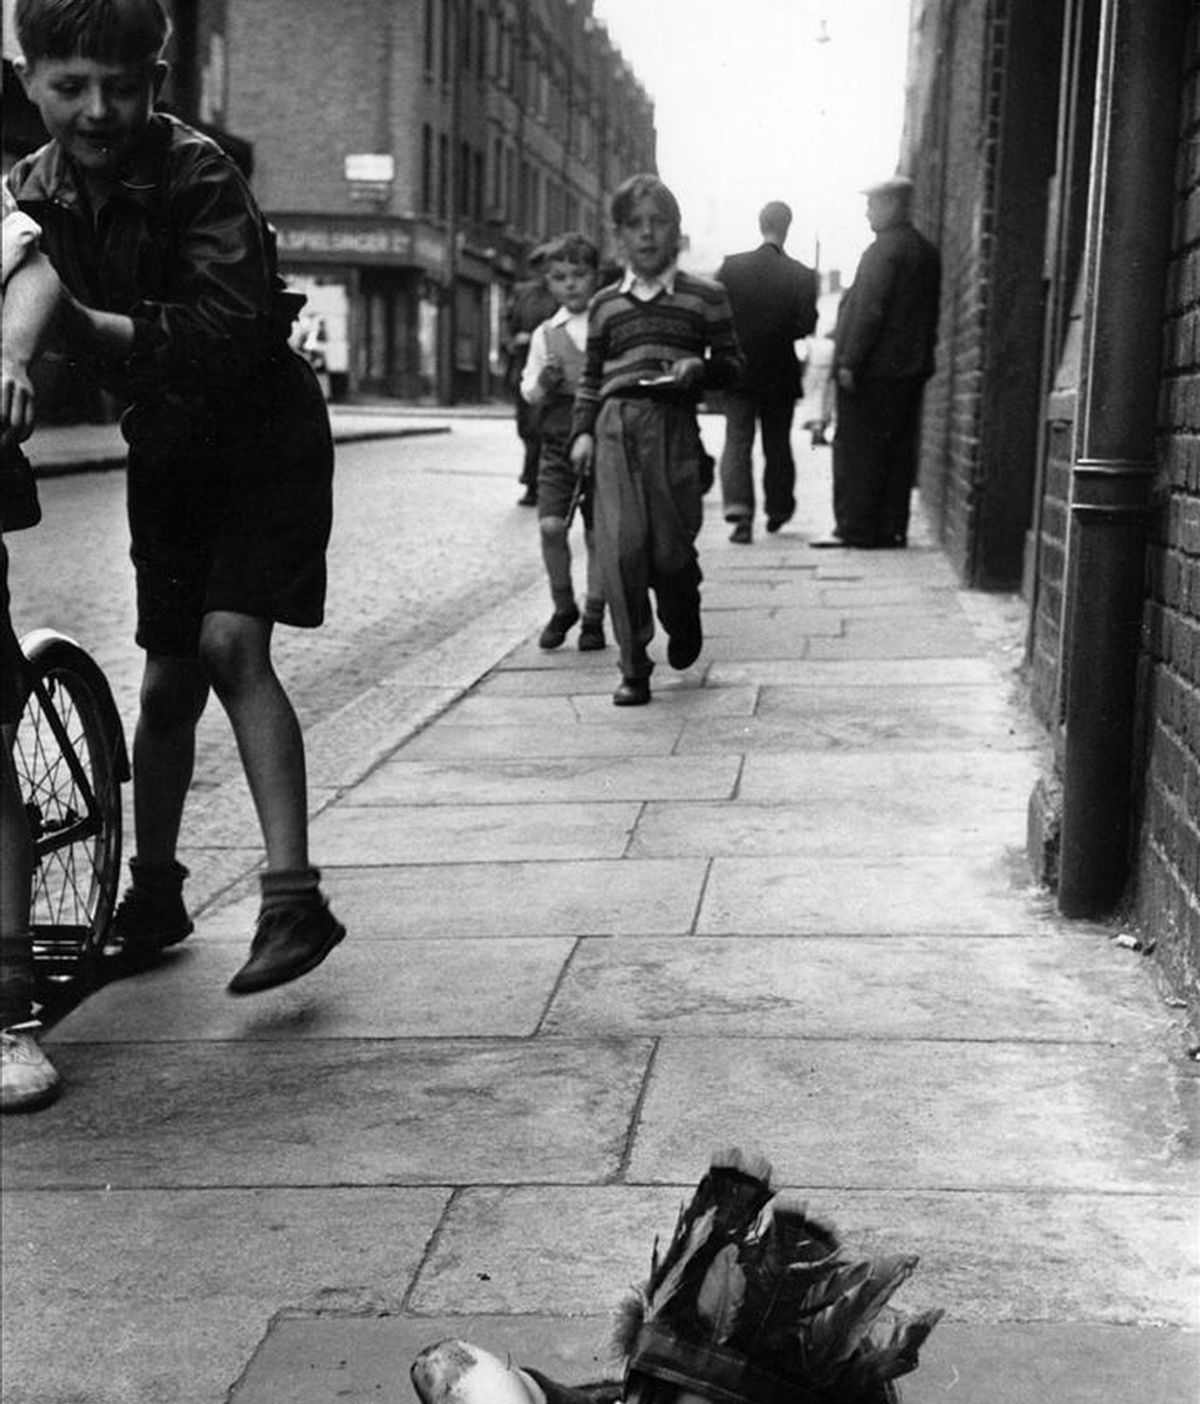 Fotografía facilitada por la Getty Images Gallery de Londres de la obra de Thurston Hopkins "Un niño juega en la calle metido en el agujero de un depósito de carbón", una de las imágenes que se pueden ver en la exposición que organiza esta galería que ordena su memoria de la Europa de los años cincuenta, que comprende desde escenas de la vida cotidiana en los suburbios hasta imágenes memorables de estrellas de cine. EFE/ Thurston Hopkins